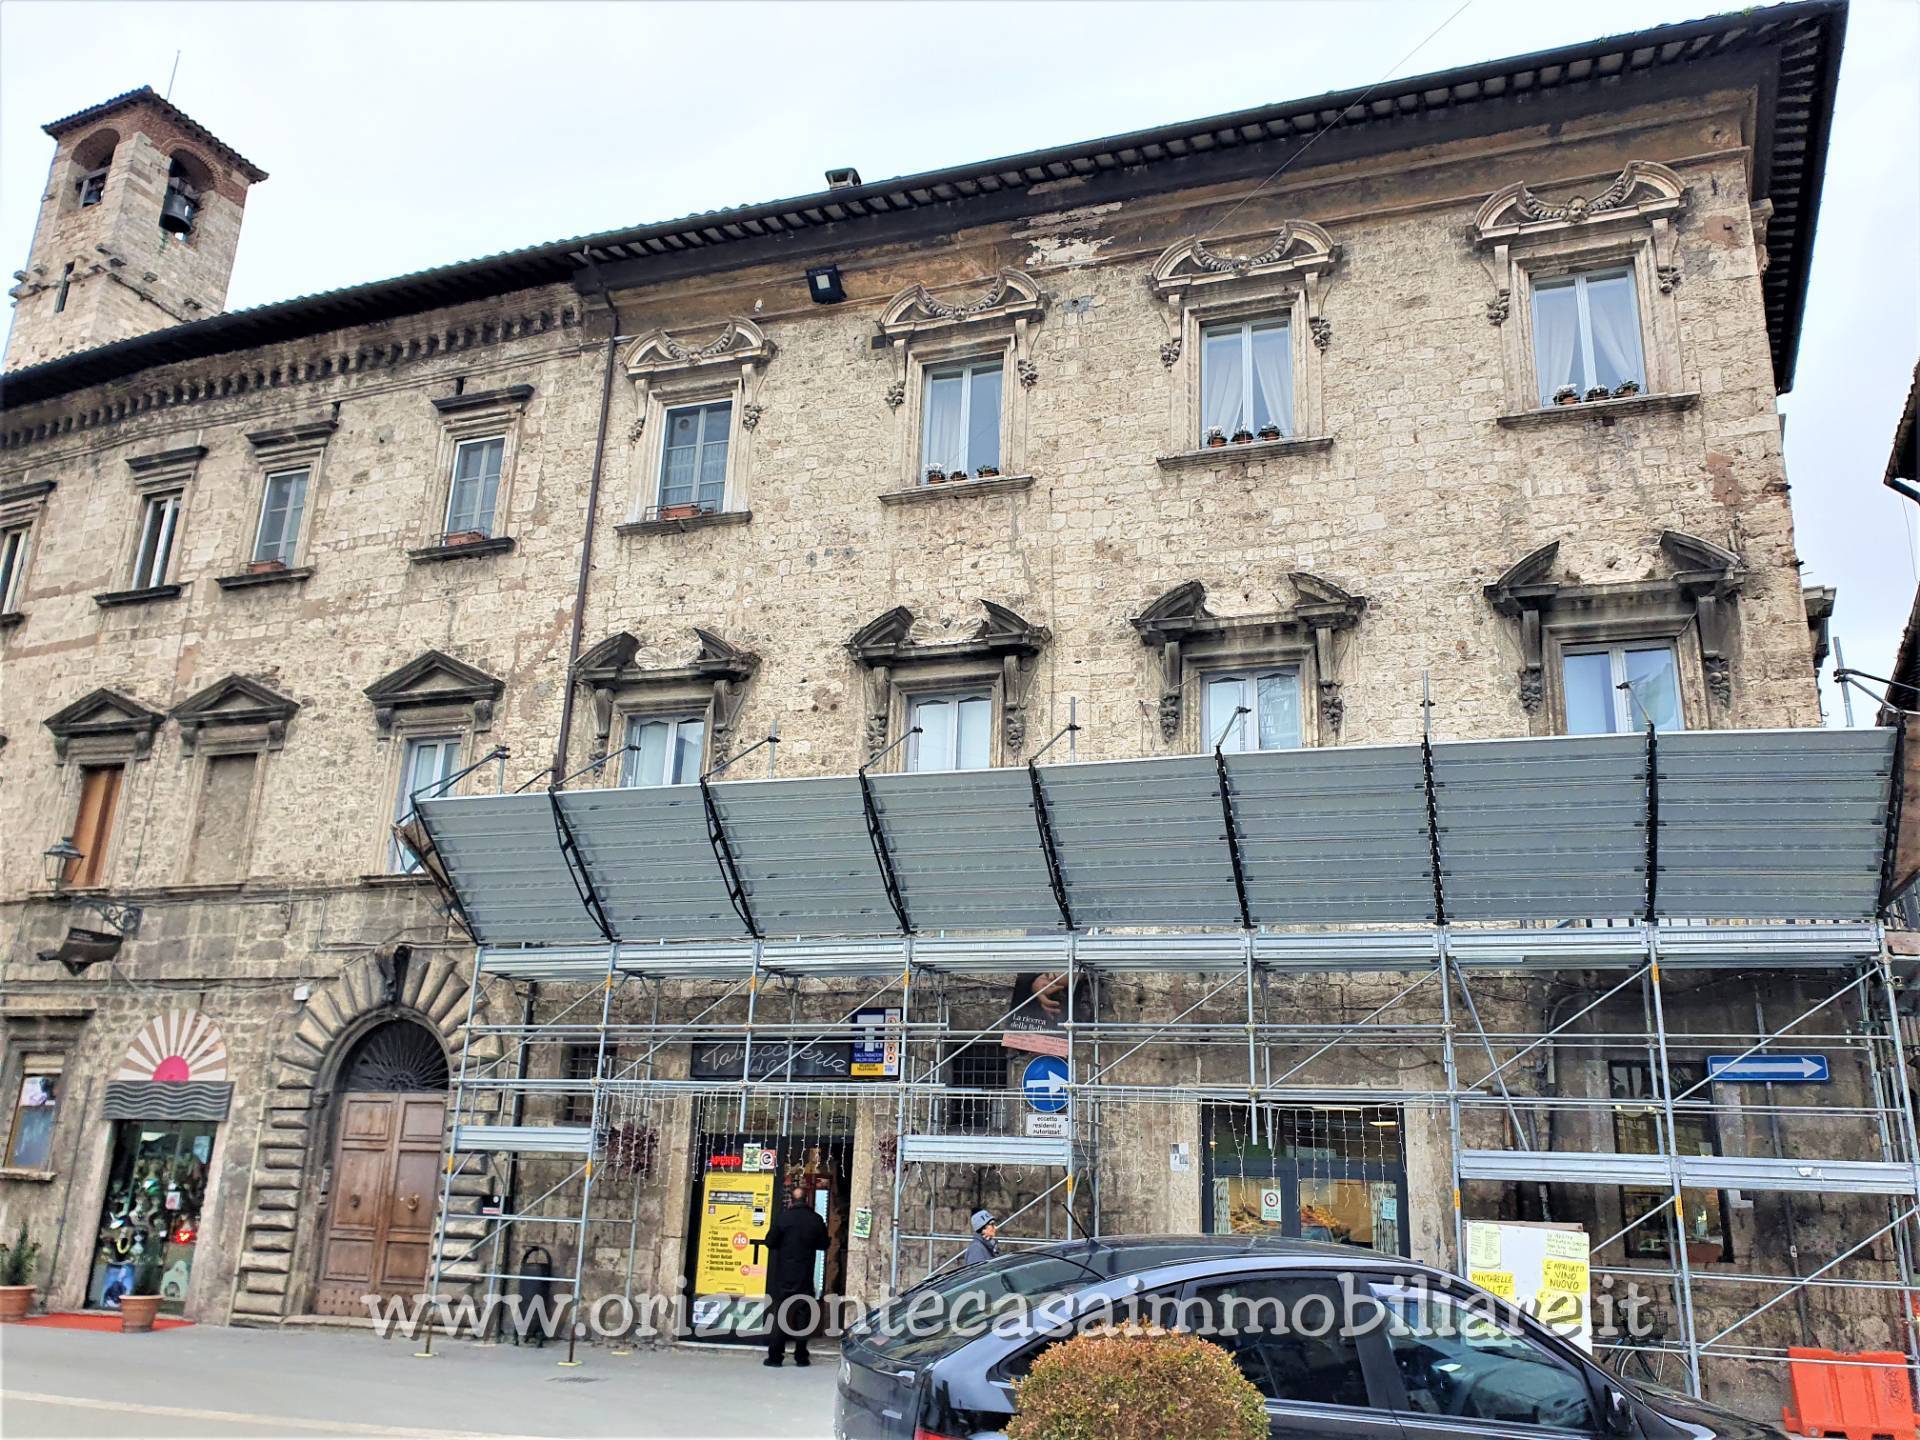 Attico / Mansarda in vendita a Ascoli Piceno